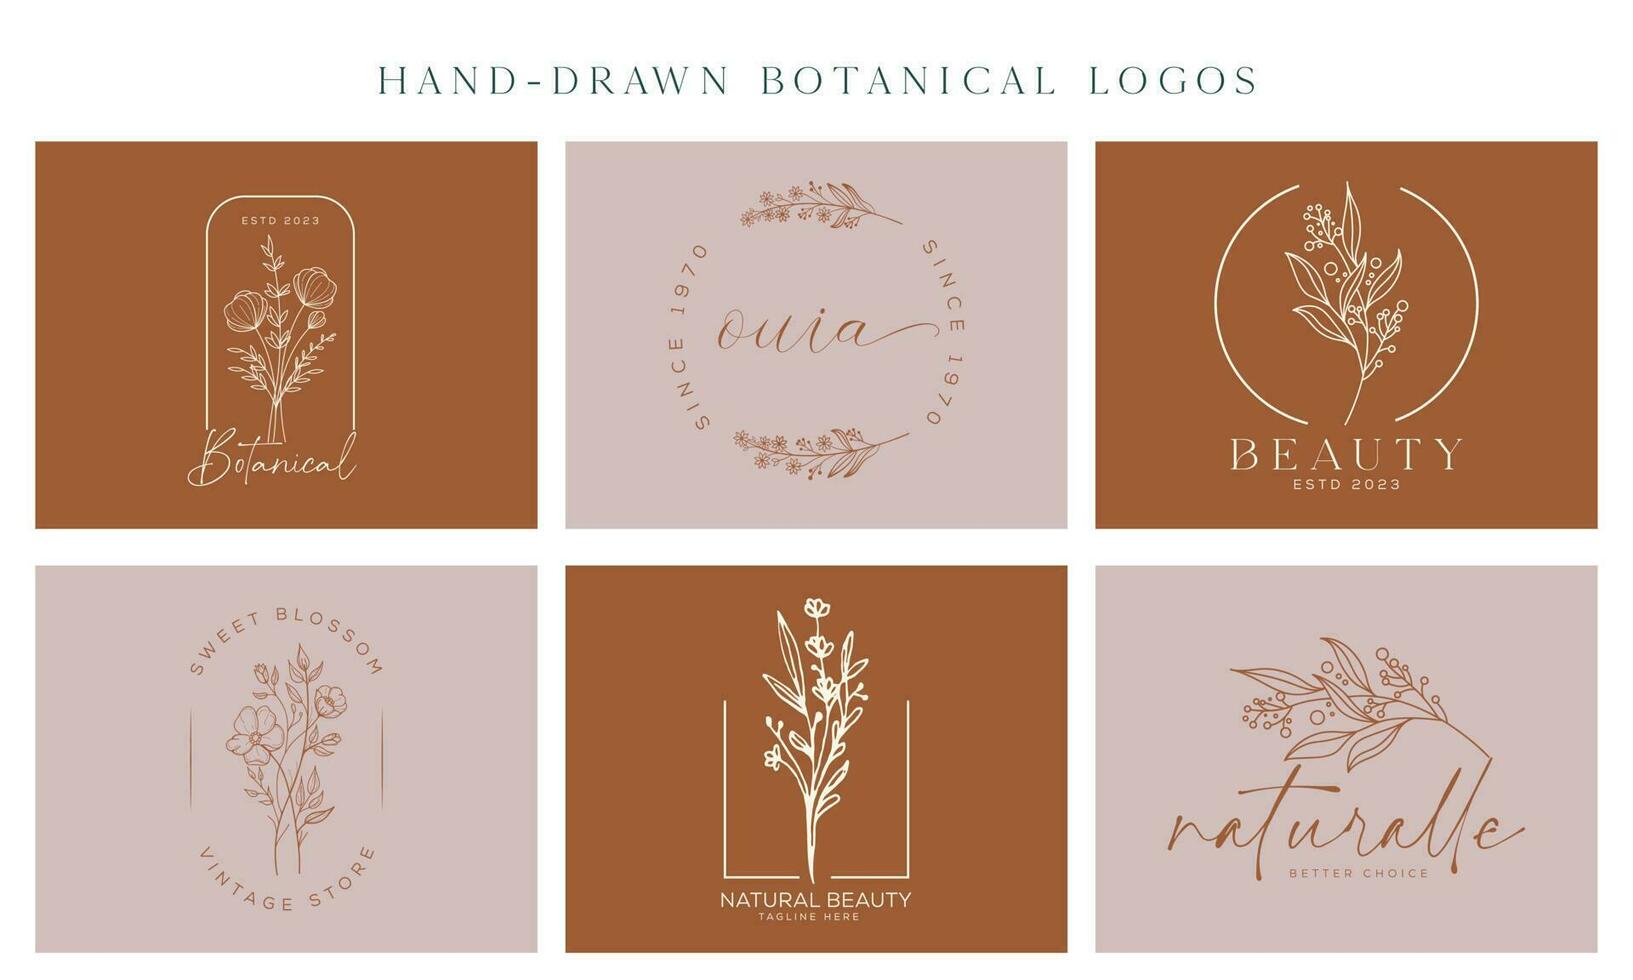 elemento floral botánico vector logotipo dibujado a mano de moda con flores silvestres y hojas. logo para spa y salón de belleza, boutique, tienda orgánica, boda, diseñador floral, interior, fotografía, cosmética.